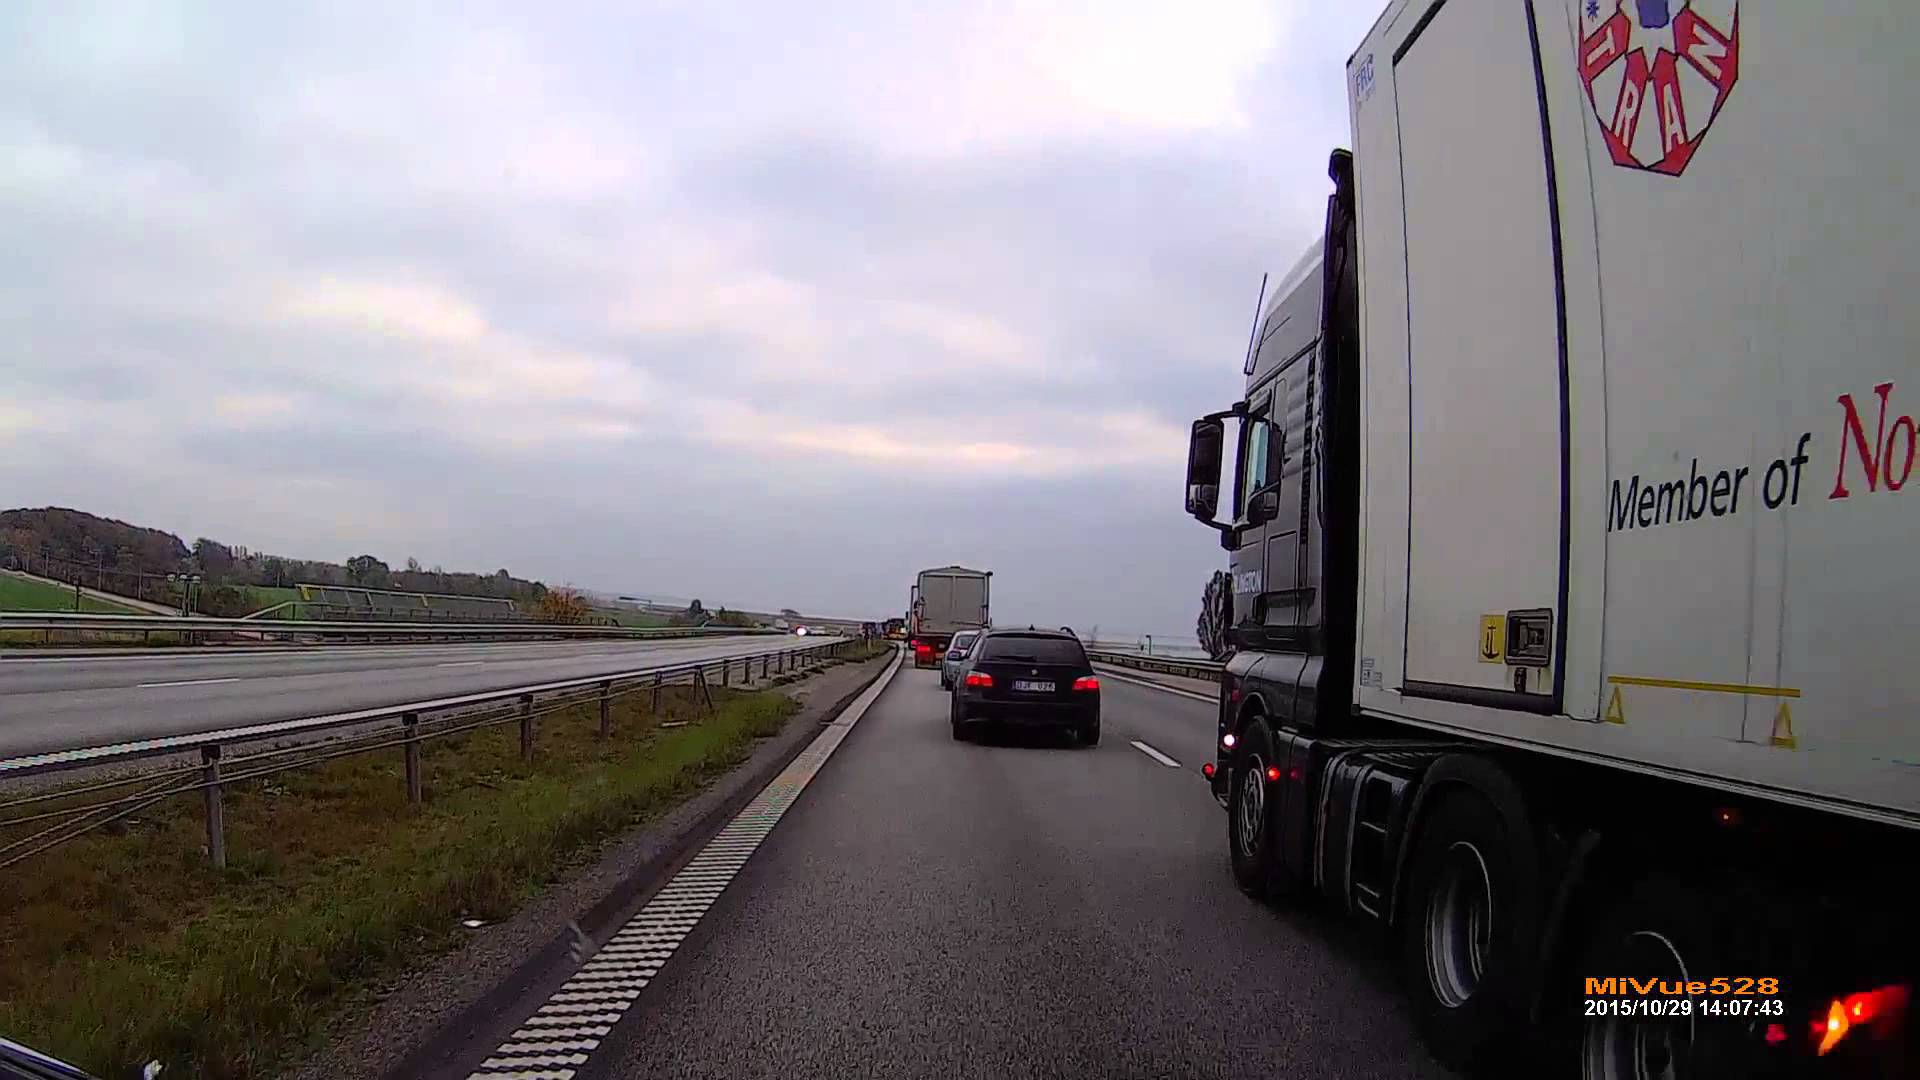 Bezczelne zachowanie Duńczyka na autostradzie. –  